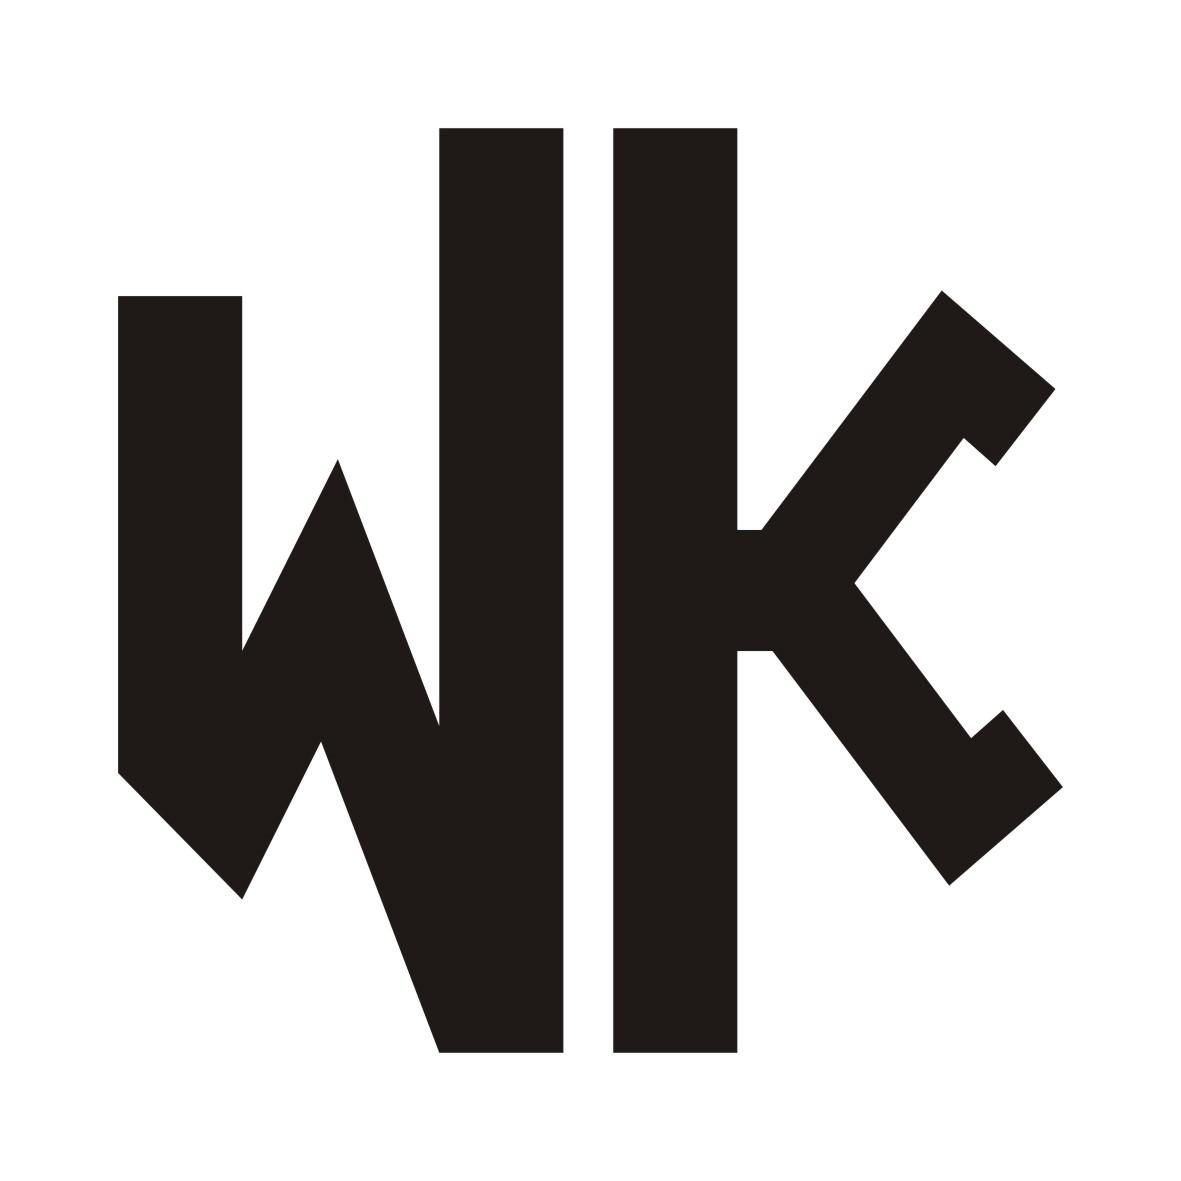 转让商标-WK